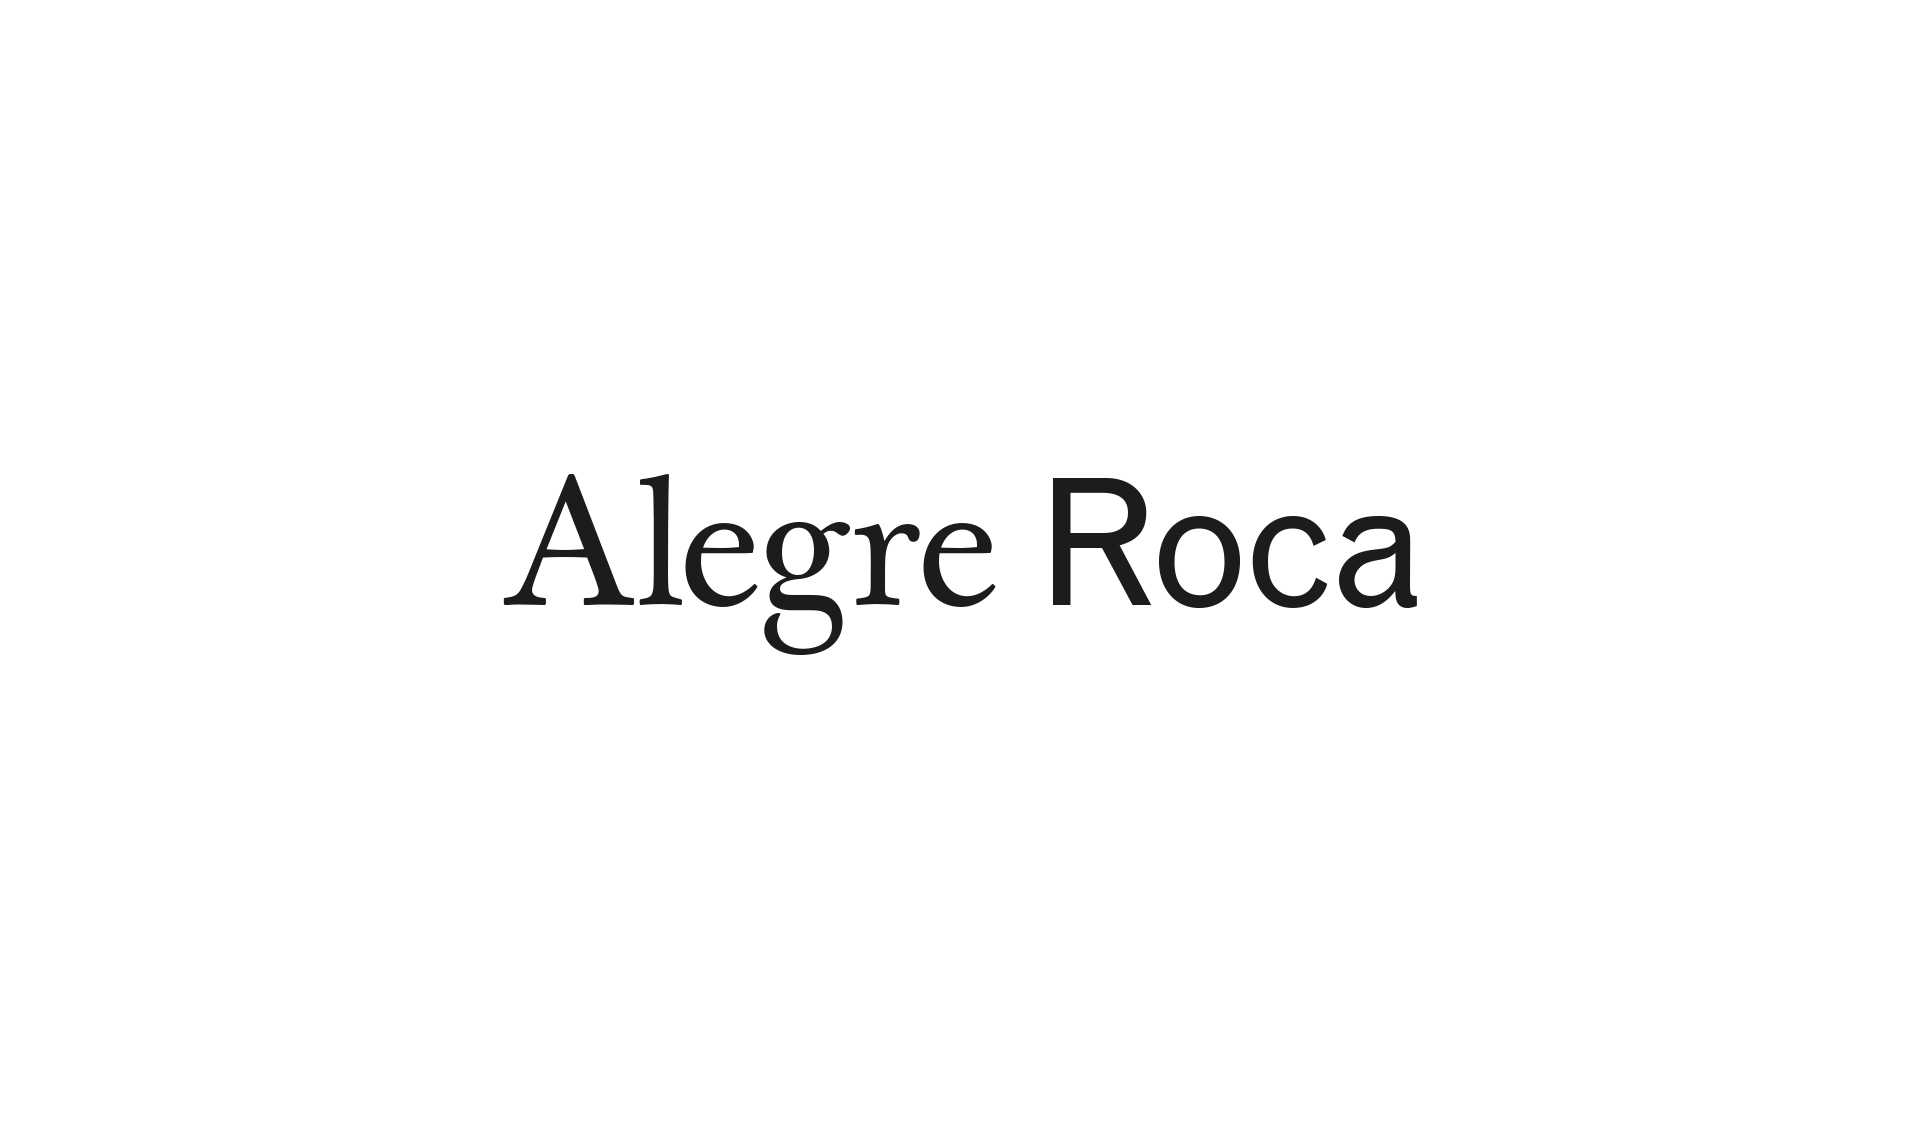 Alegre Roca